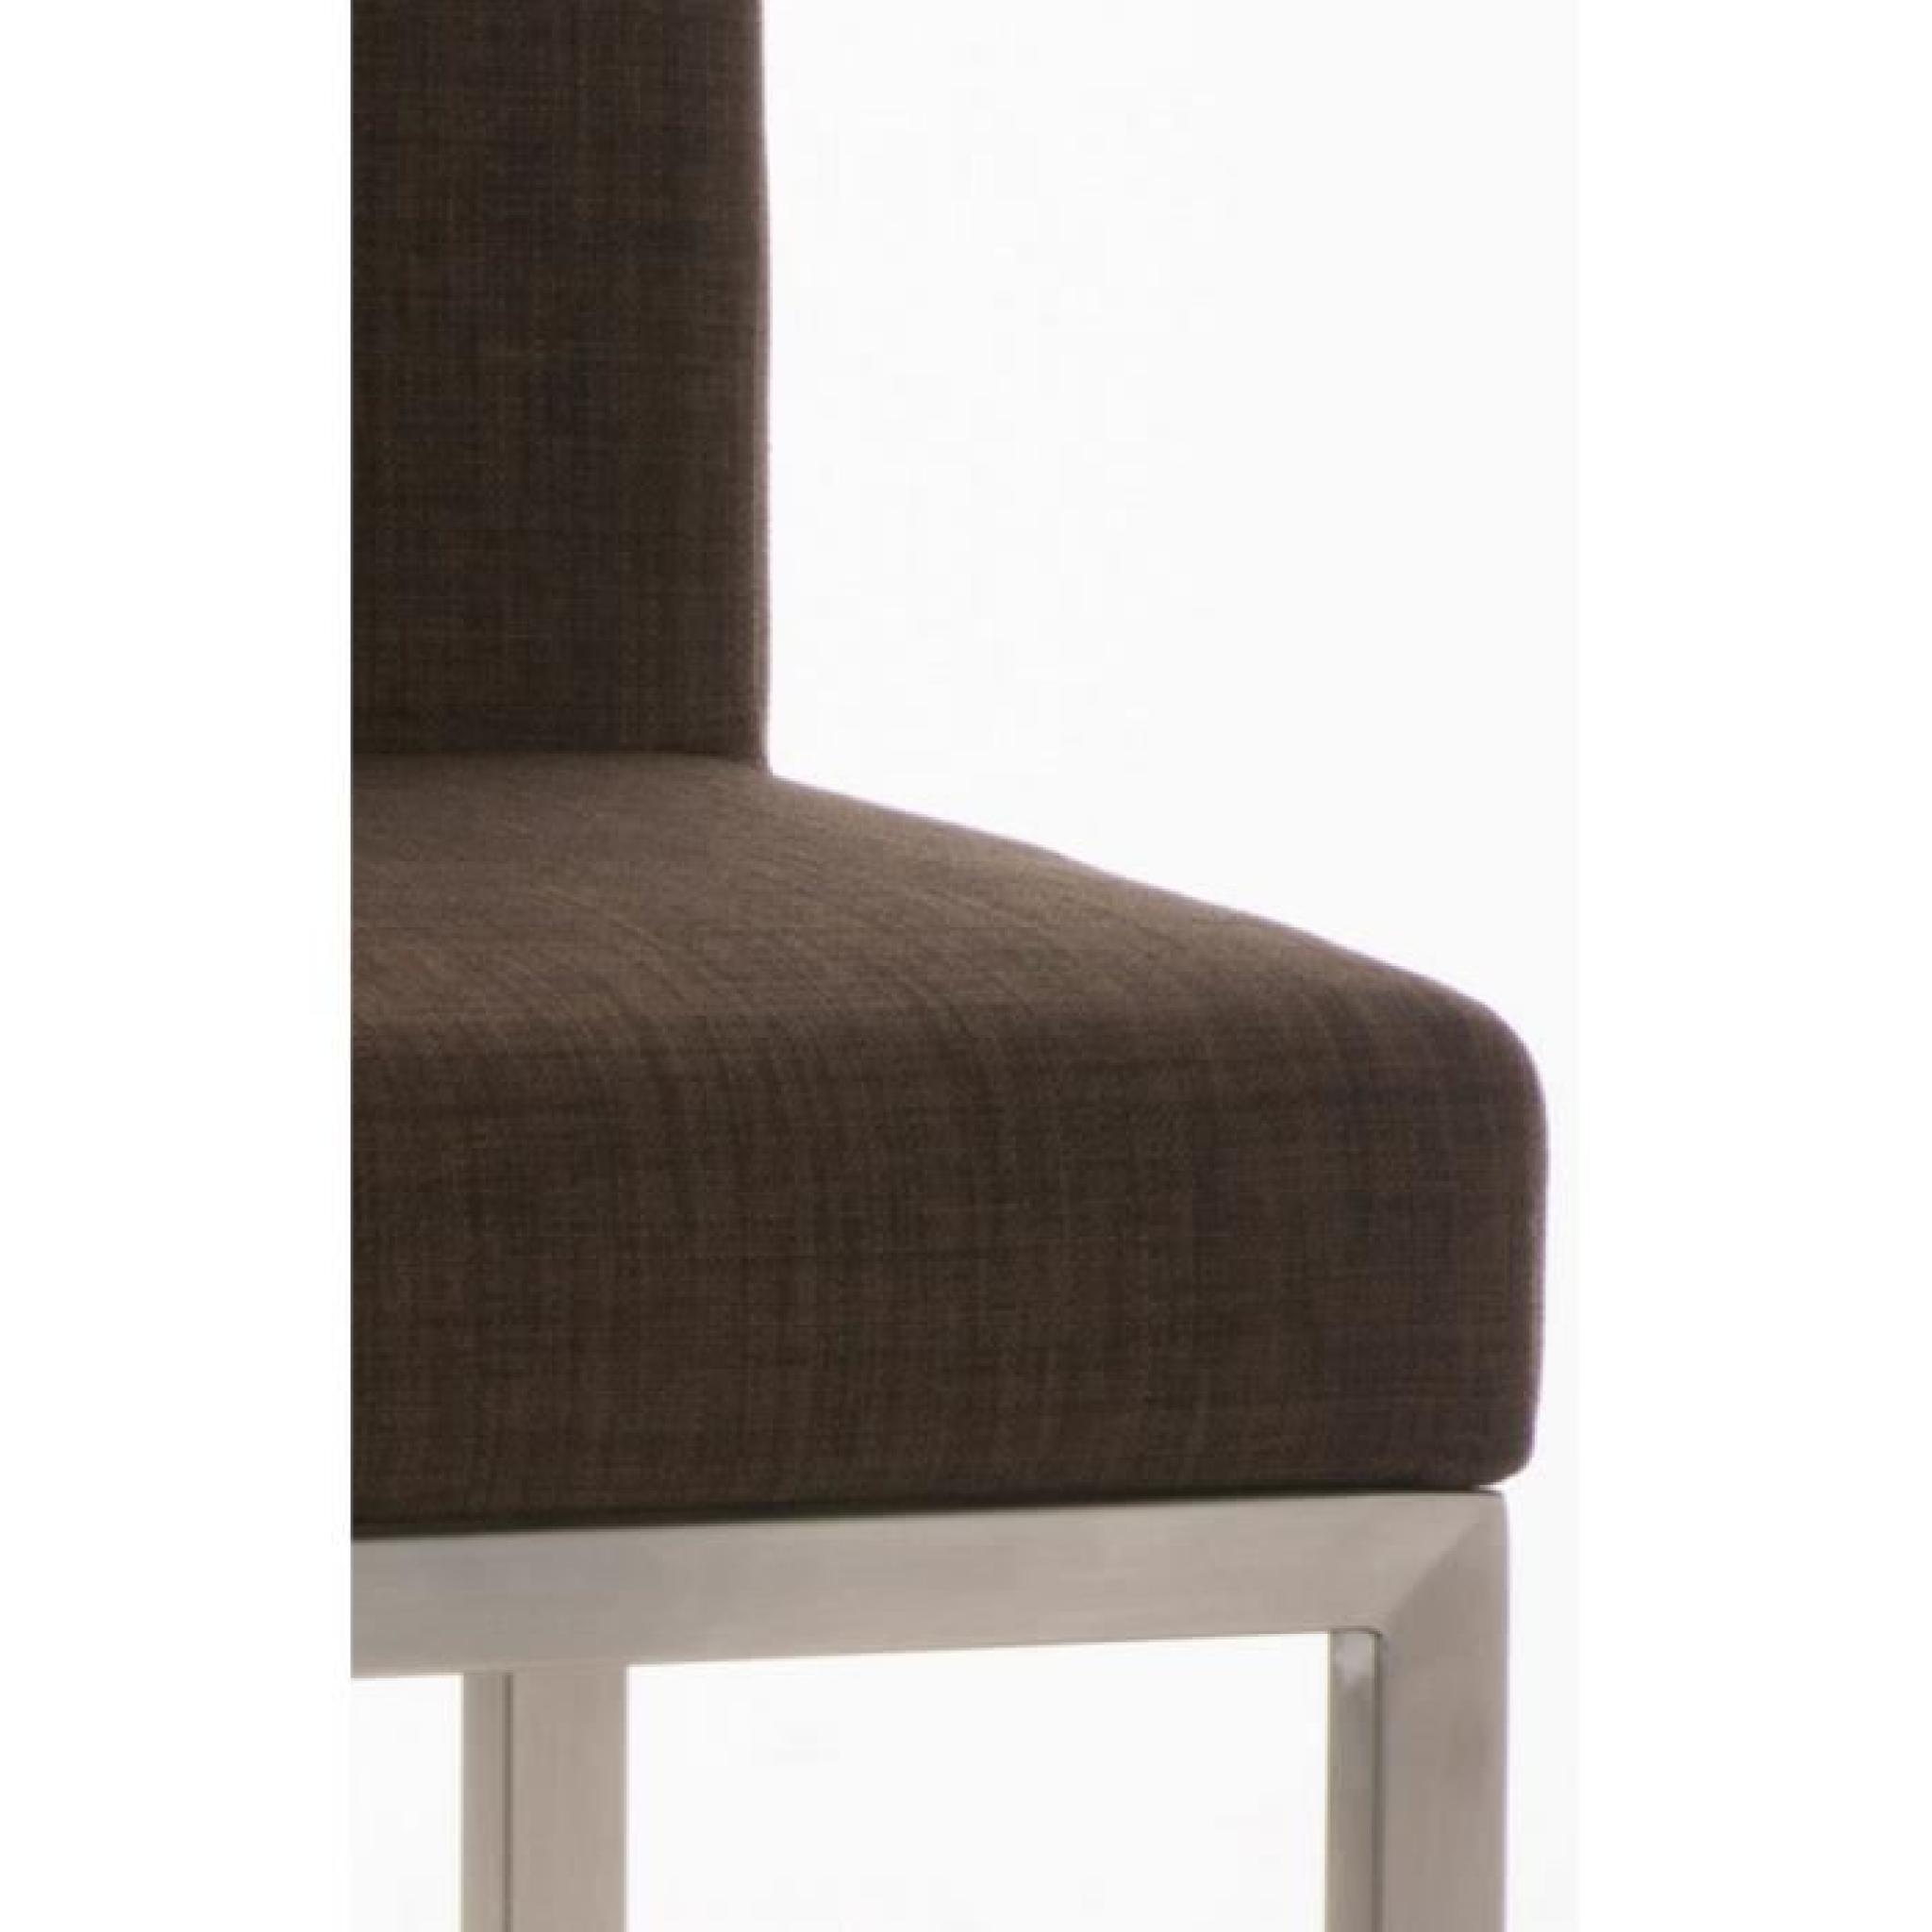 Chaise de bar en acier inoxydable et tissu coloris brun, H 96,5 x L 40 x P 44,5 cm pas cher